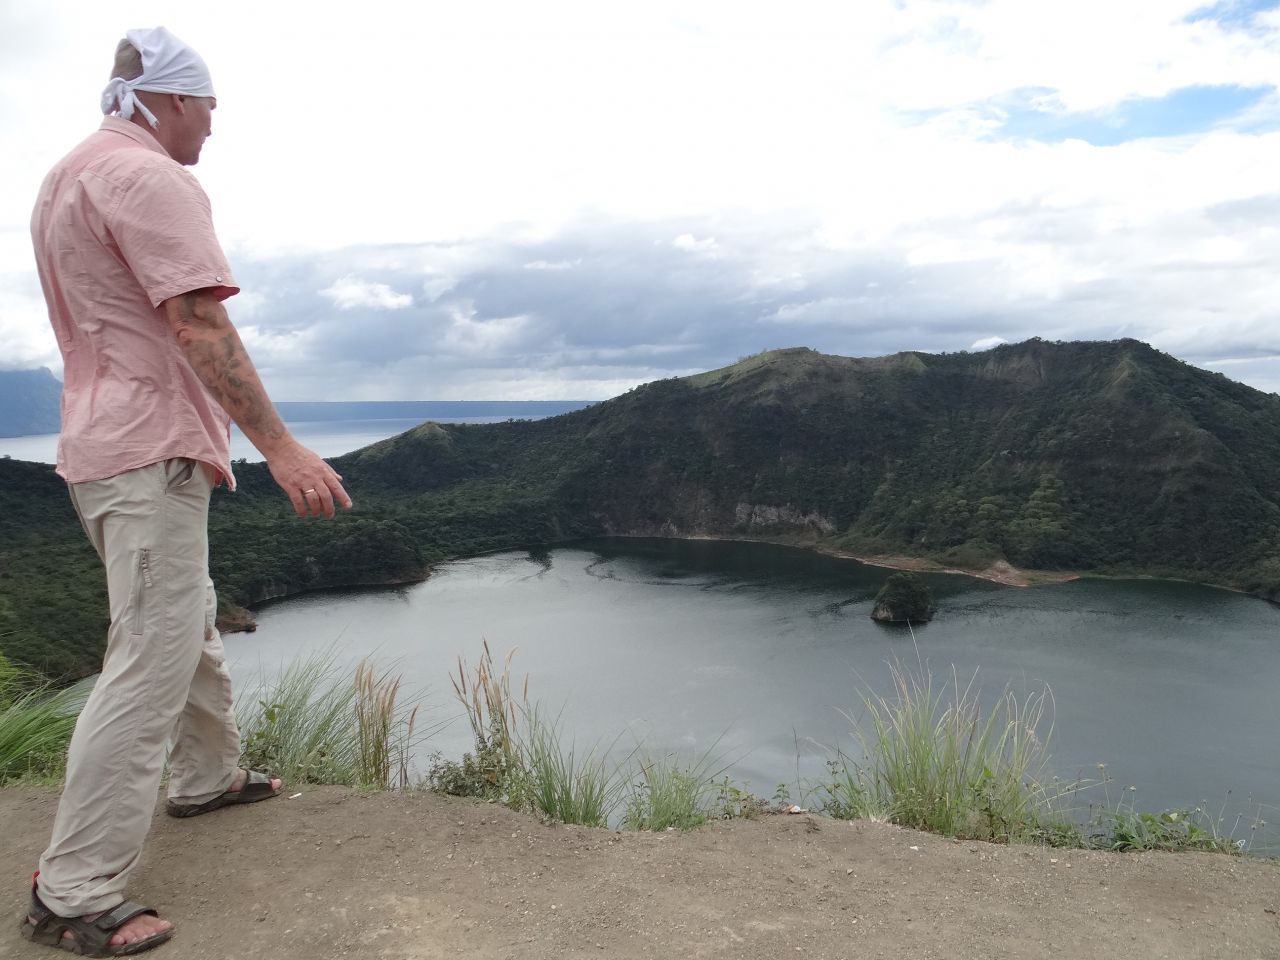 Тааль представляет собо вулкан с озером в кратере, расположенный посреди большого озера. Это озеро в свою очередь – древний кратер, образовавшийся в результате прошлых извержений «большого Тааля». Своеобразная вулканическая матрешка. - Австралия, Сингапур, Малайзия,Филиппины. Декабь 2012-январь 2013.